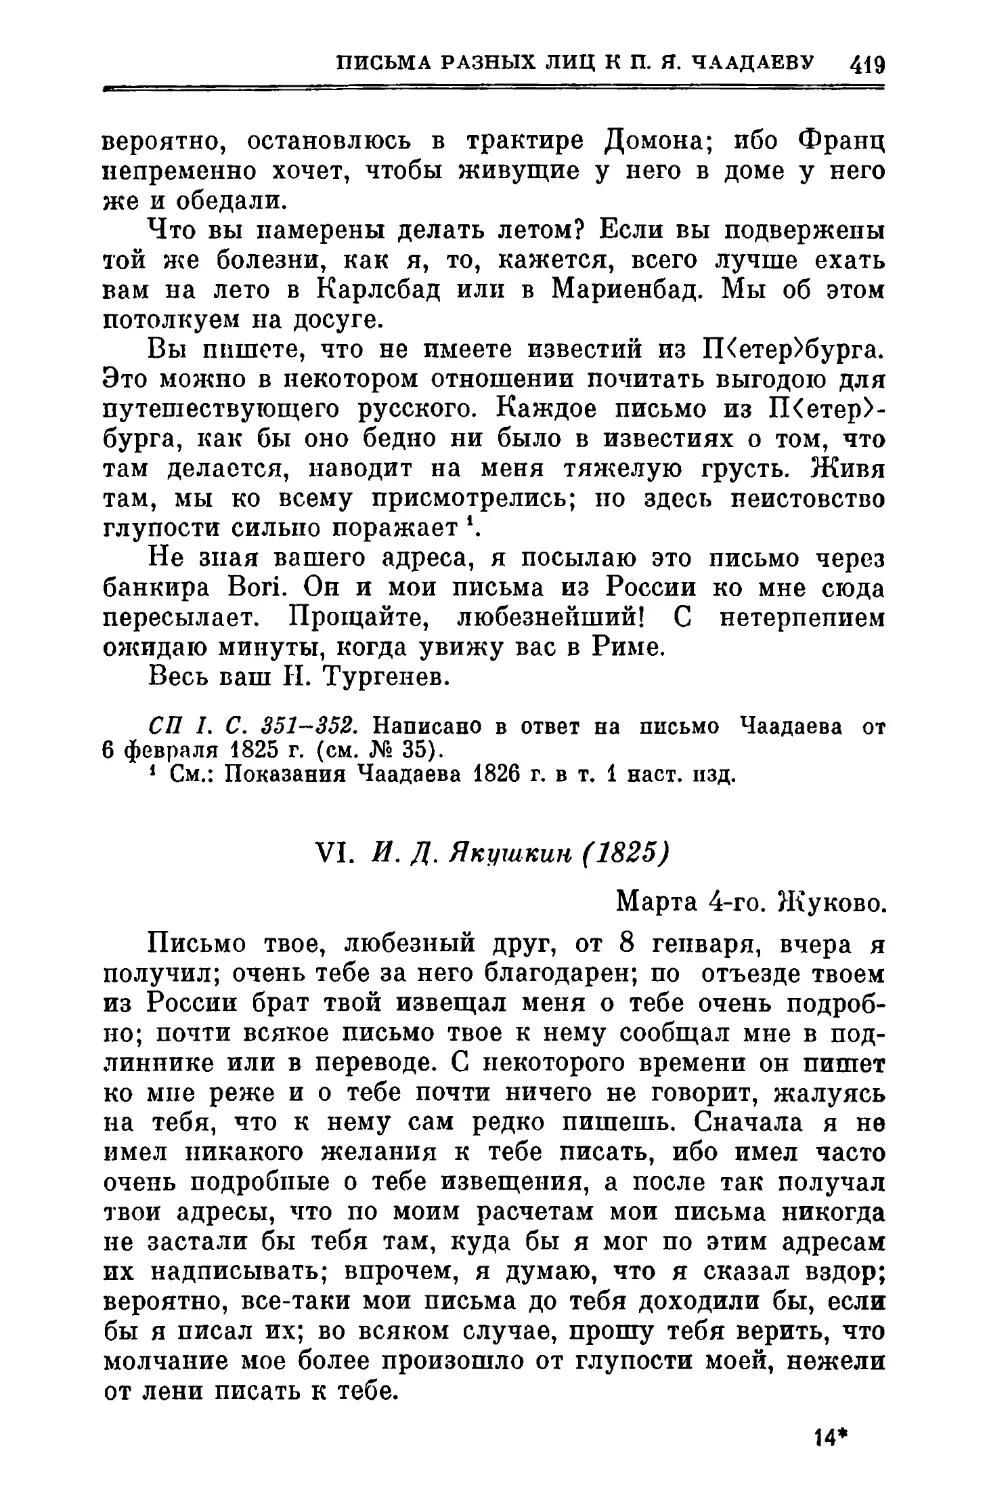 VI. Якушкин И.Д. 4.III.1825